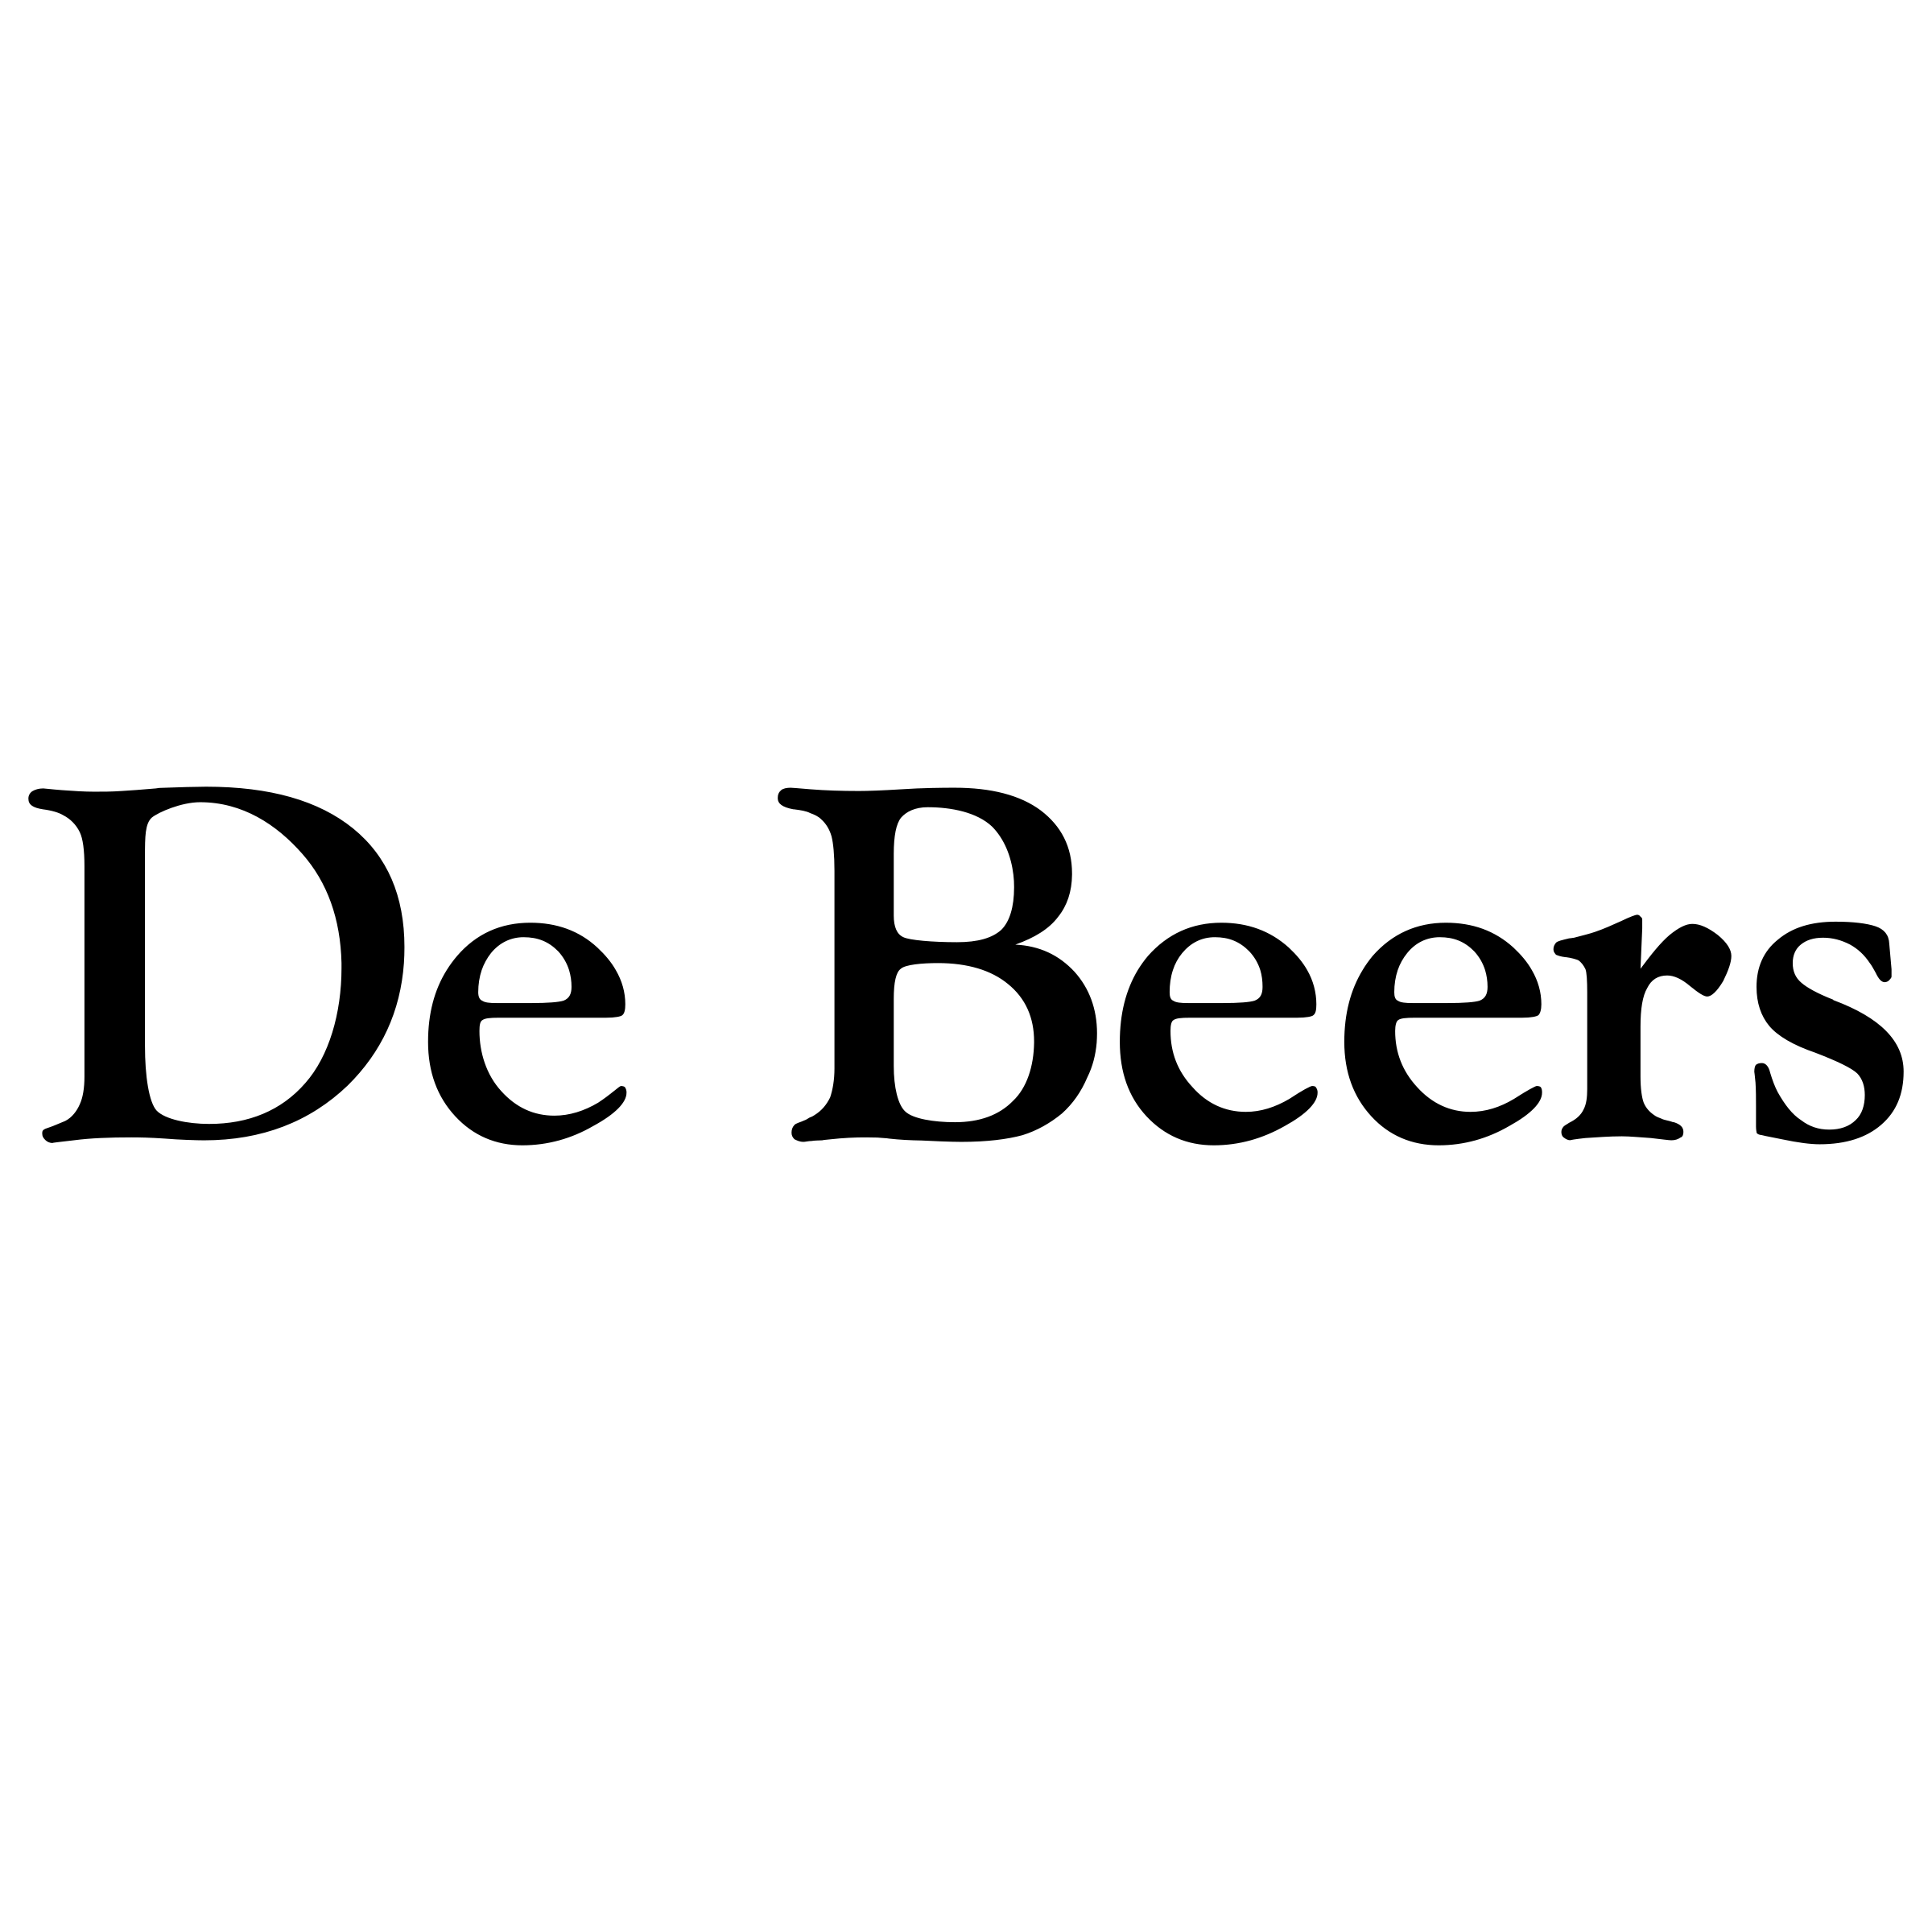 Beers Logo - De Beers Logo PNG Transparent & SVG Vector